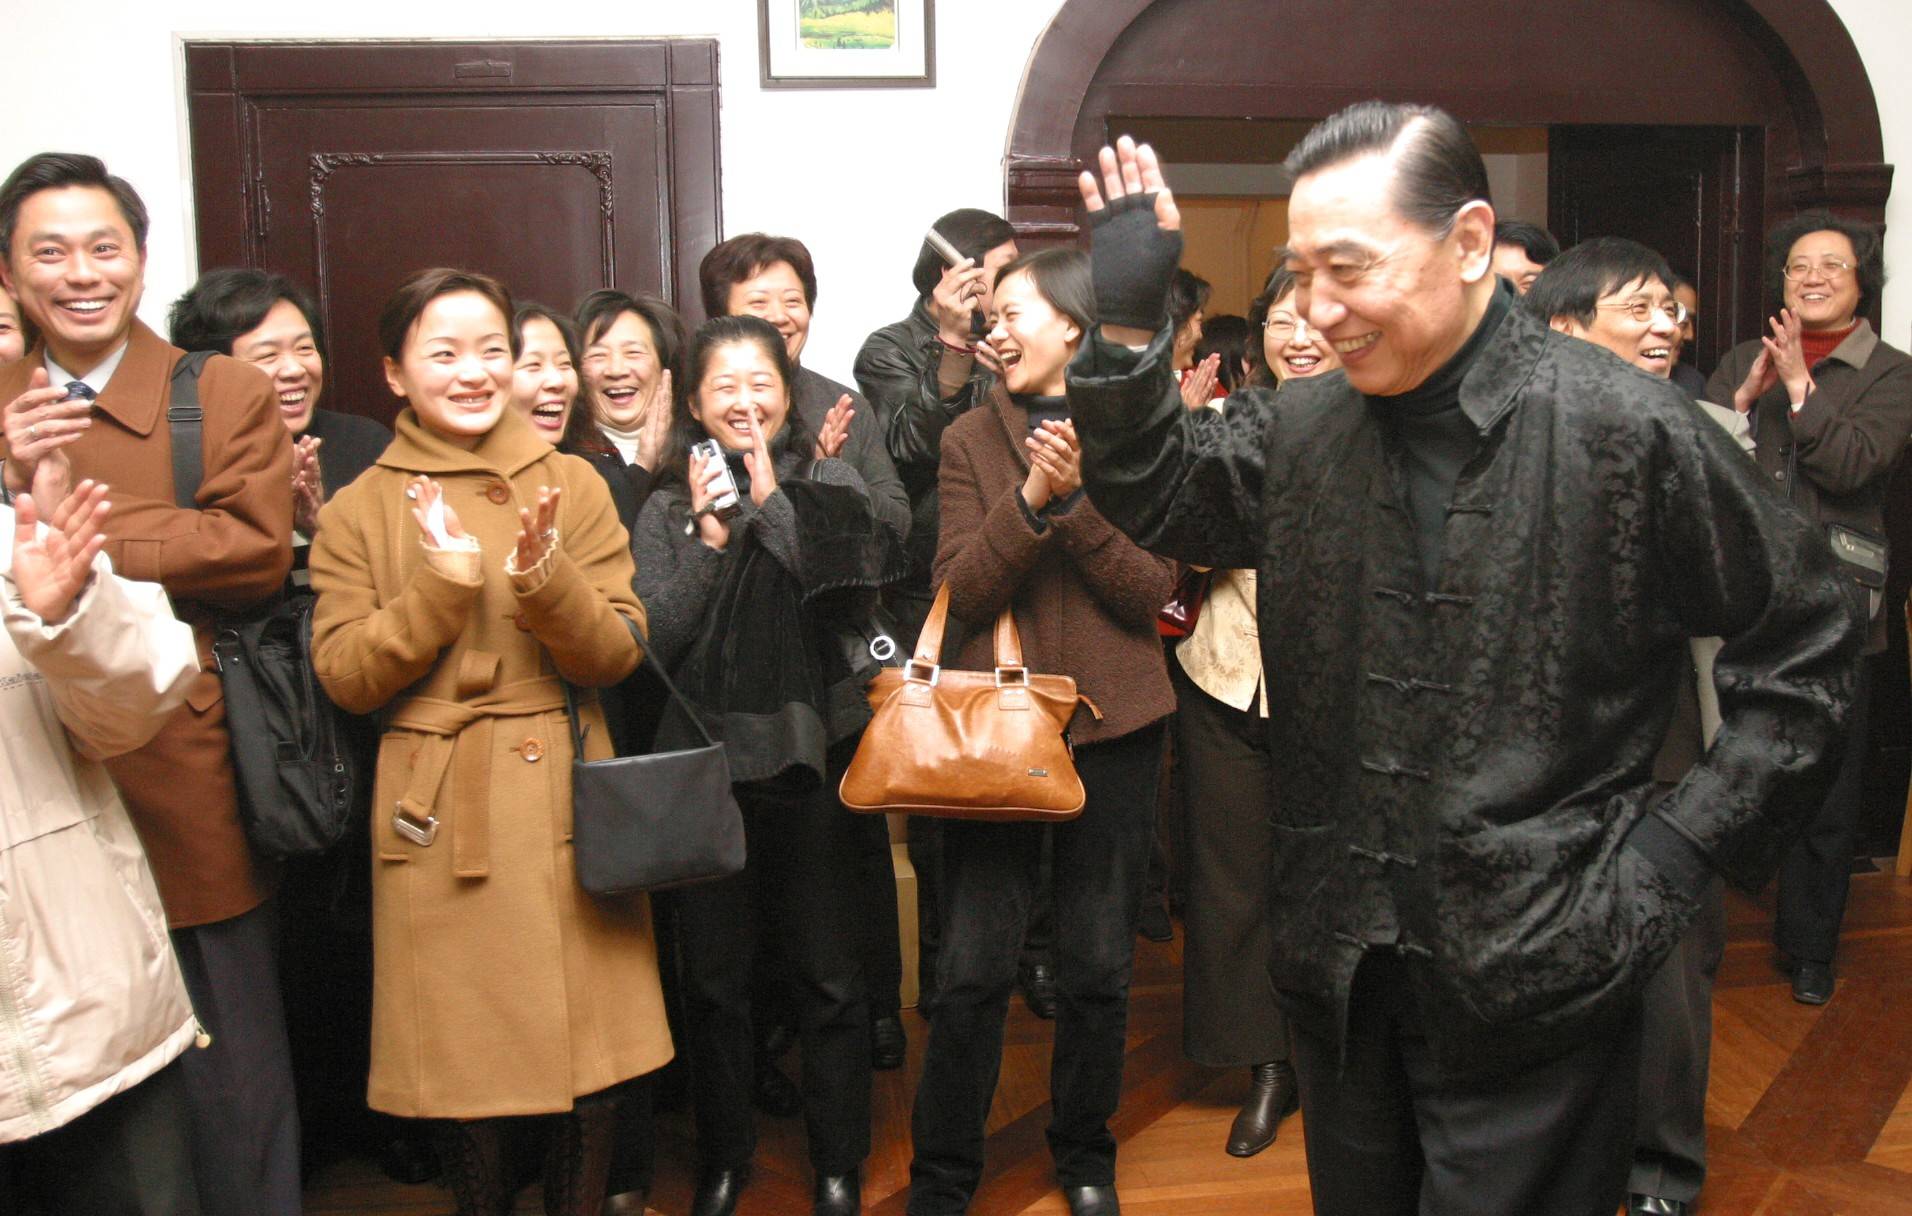 2006年,著名钢琴家傅聪访沪,学生的掌声让他露出孩子般的笑容